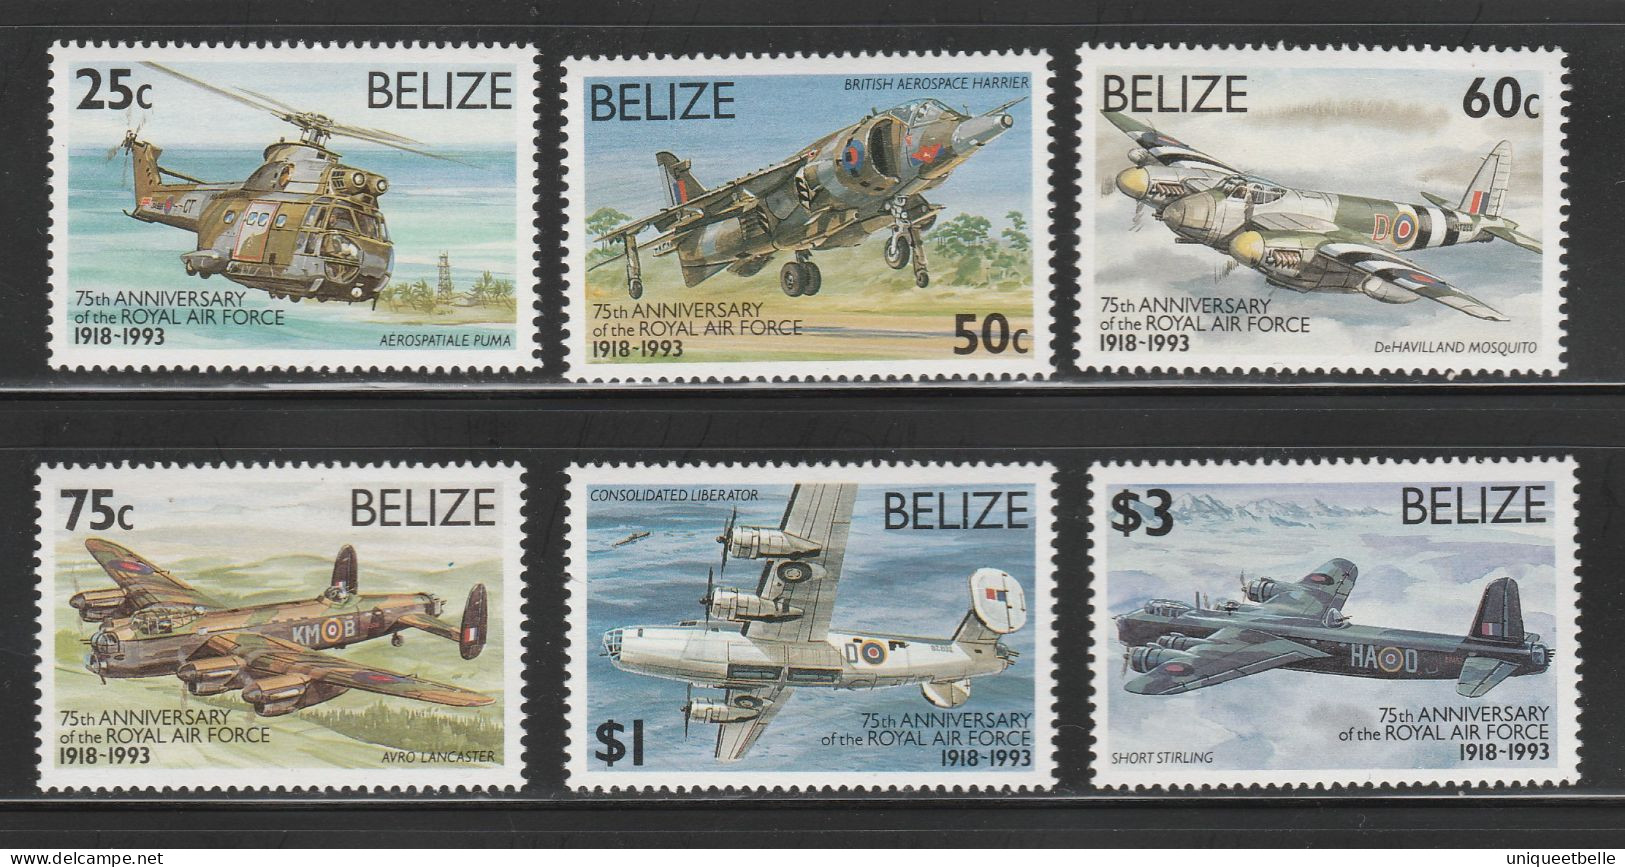 Petite collection de timbres neufs**, thème aviation